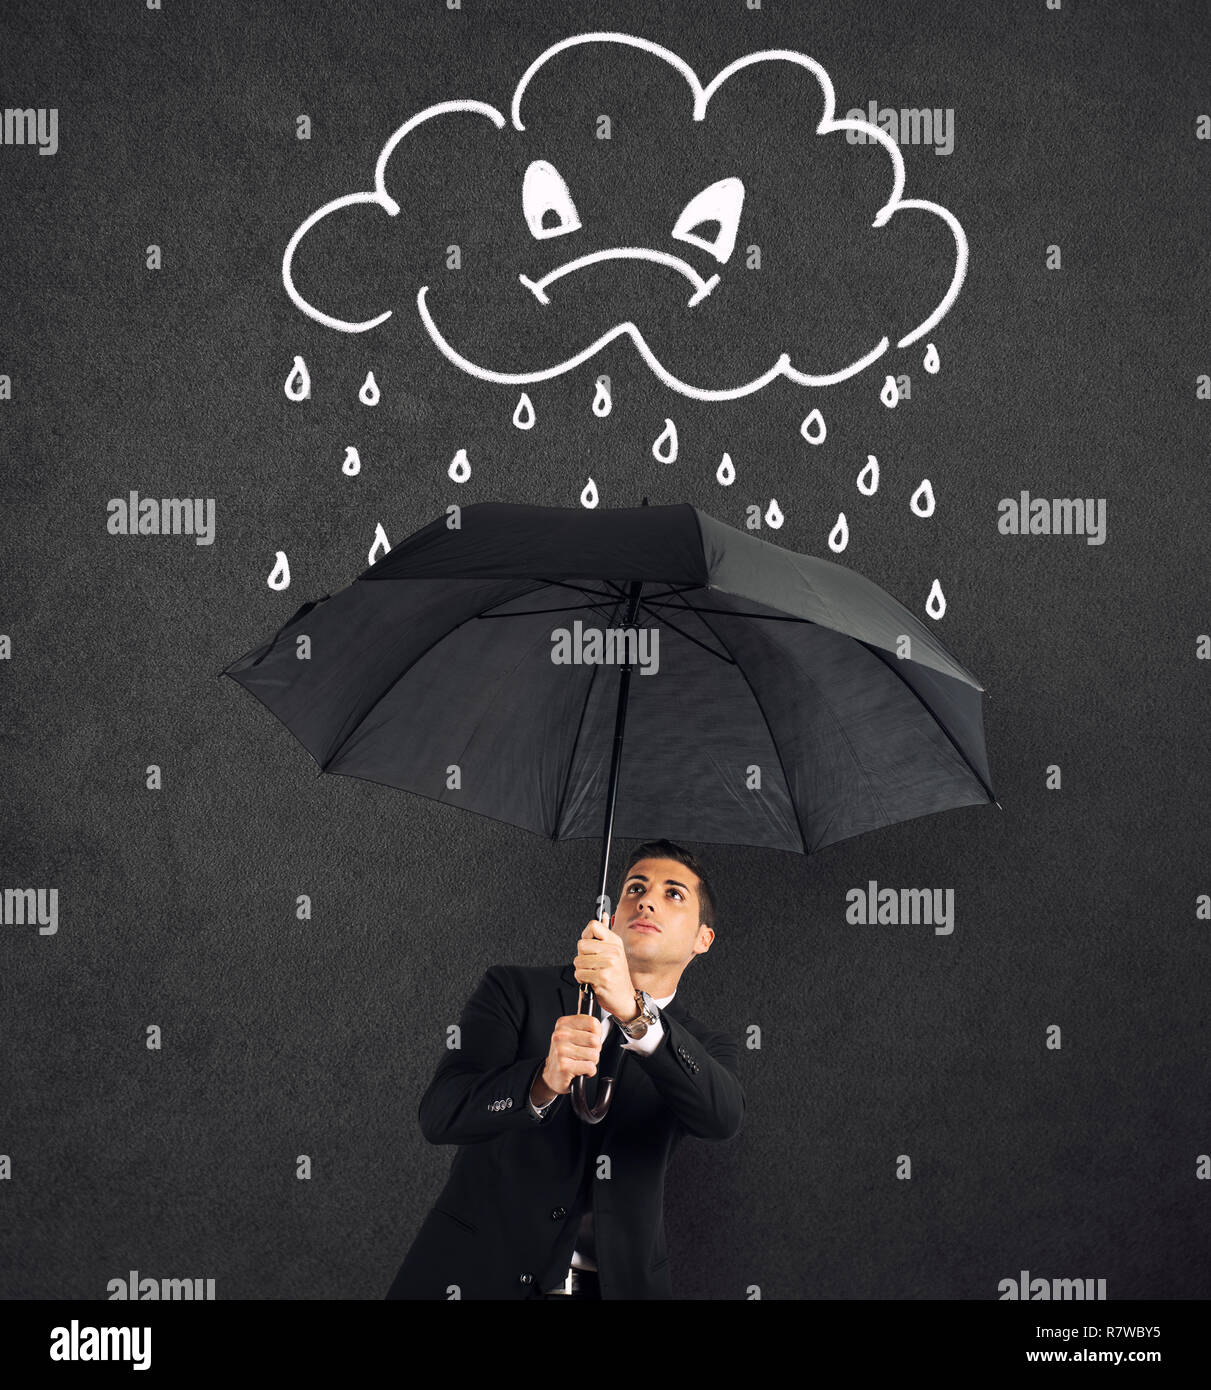 Businessman avec parapluie et un nuage en colère avec la pluie. Notion de crise et de difficultés financières. Banque D'Images